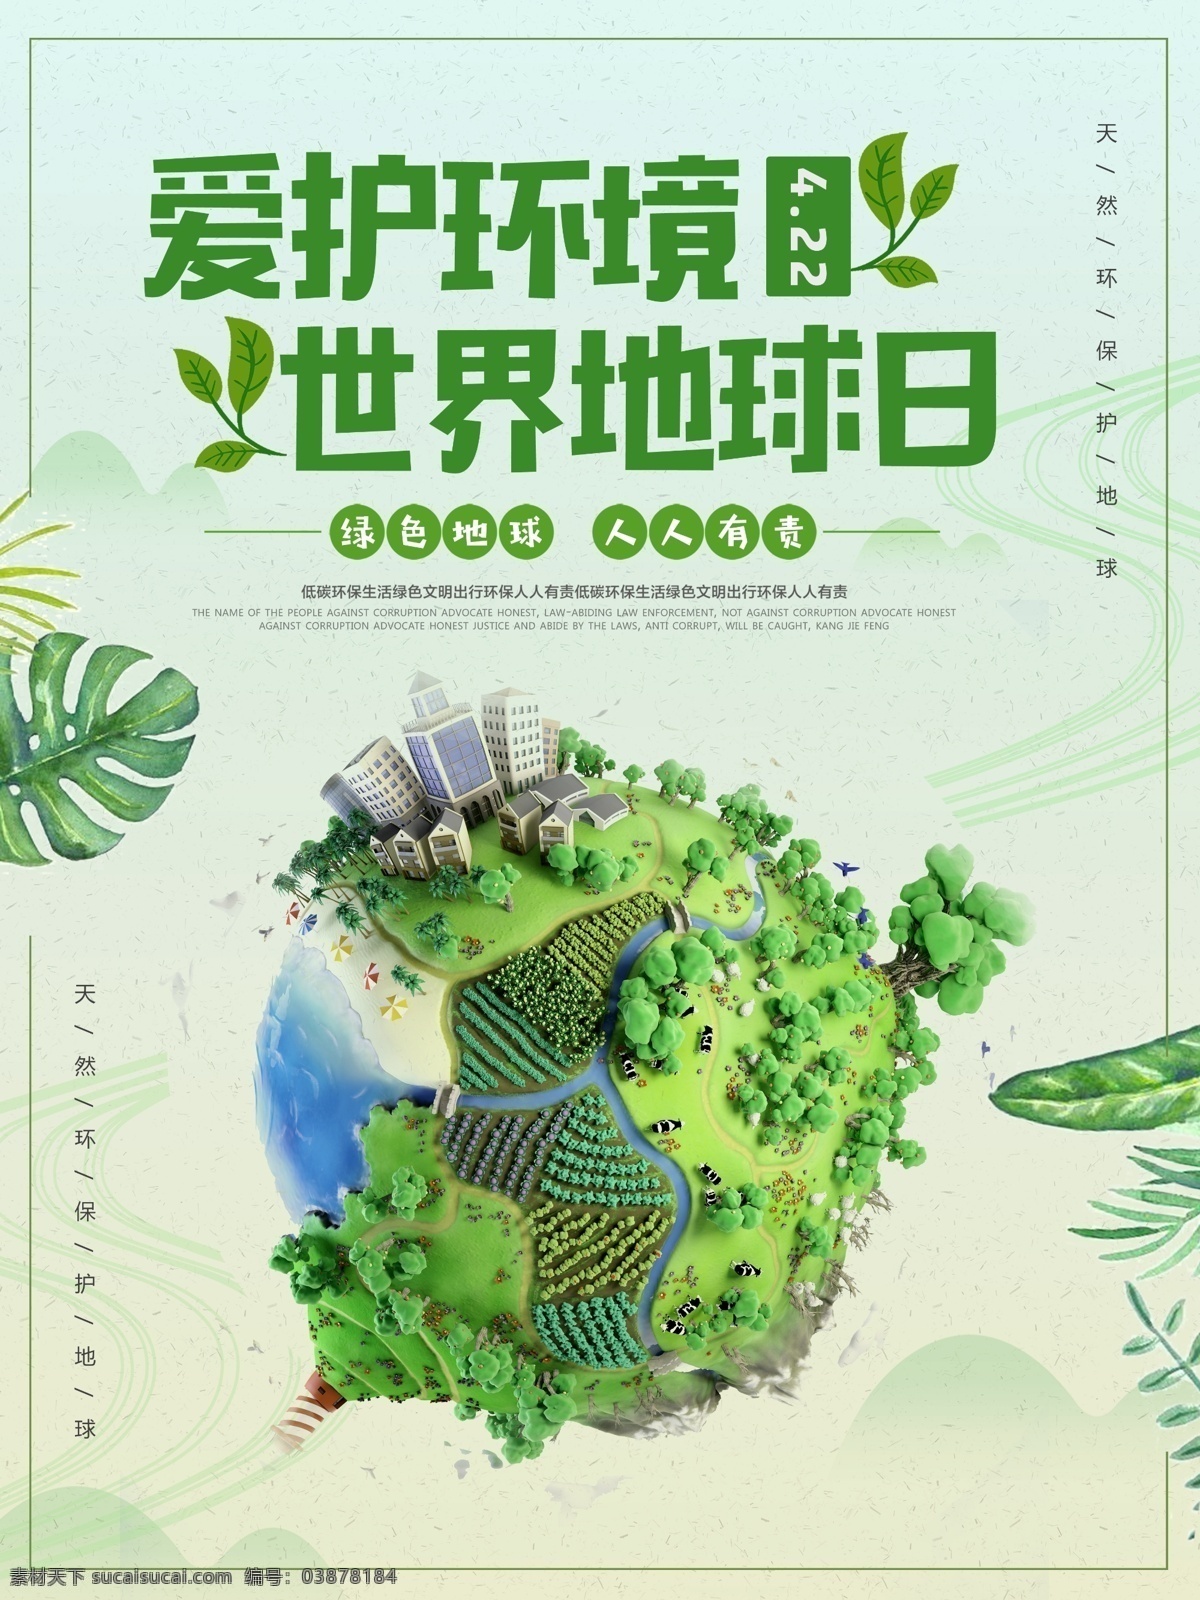 绿色 清新 世界 地球日 爱护 环境 公益 海报 环保 公益海报 世界地球日 爱护环境 环境日 绿化地球 植树造林